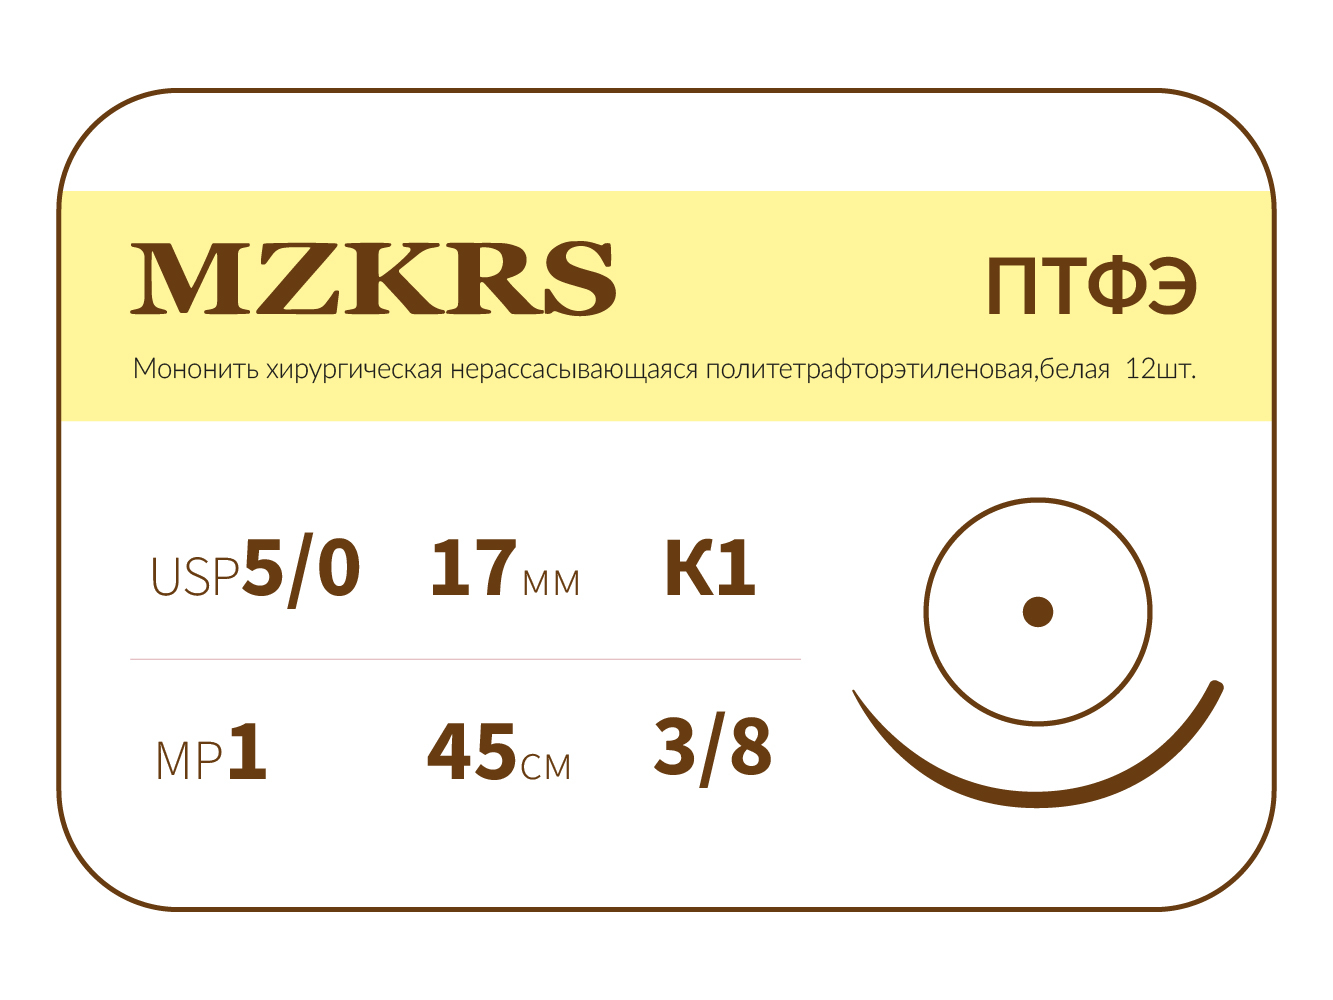 1738К-Premium 5/0 (1) 45 ПТФЭ хирургическая нить политетрафторэтиленовая, MZKRS (Россия)